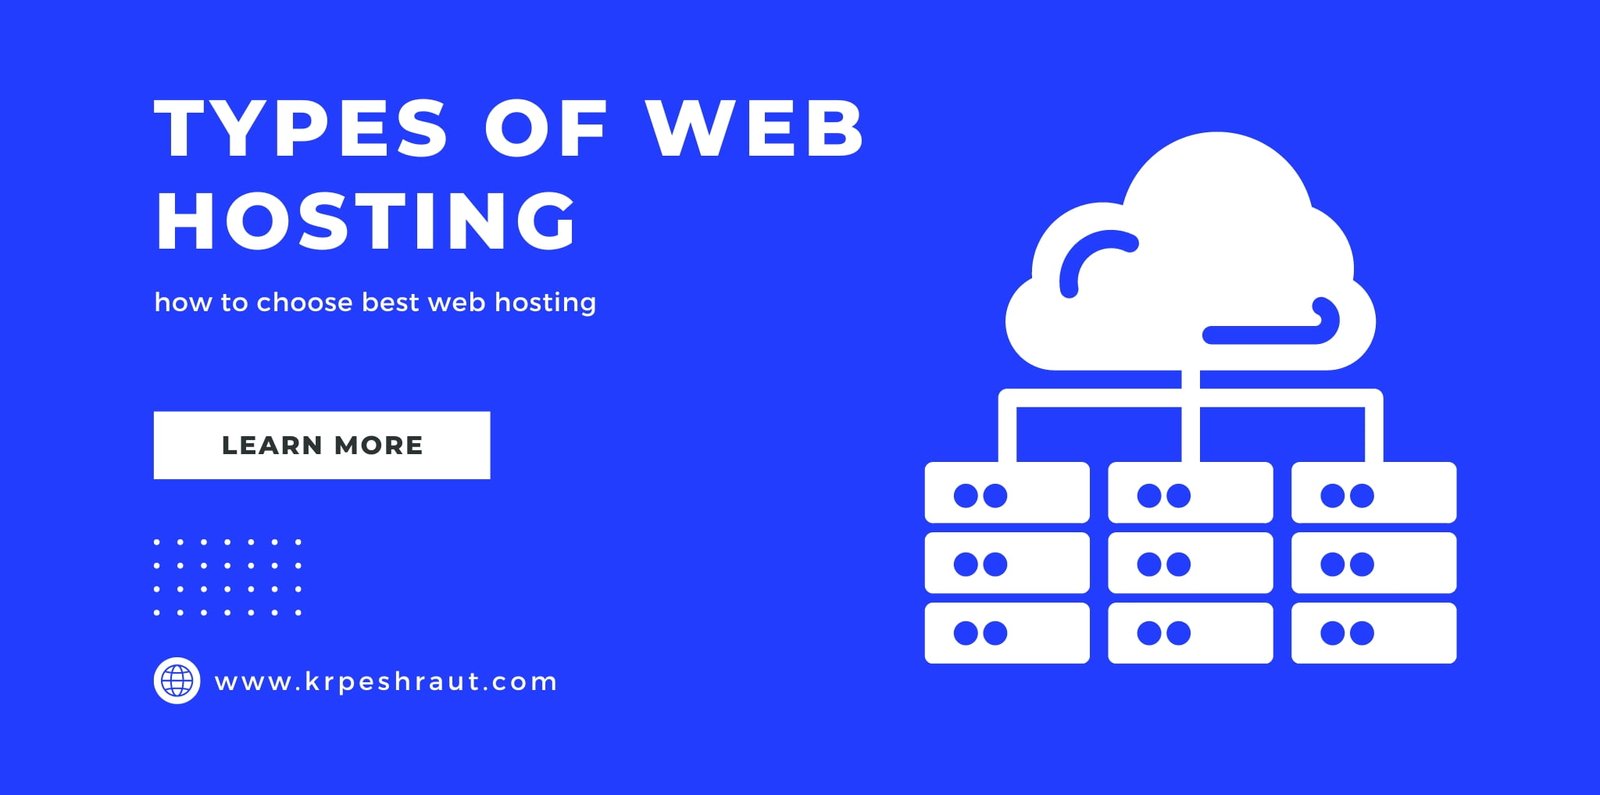 typesh of web hosting india